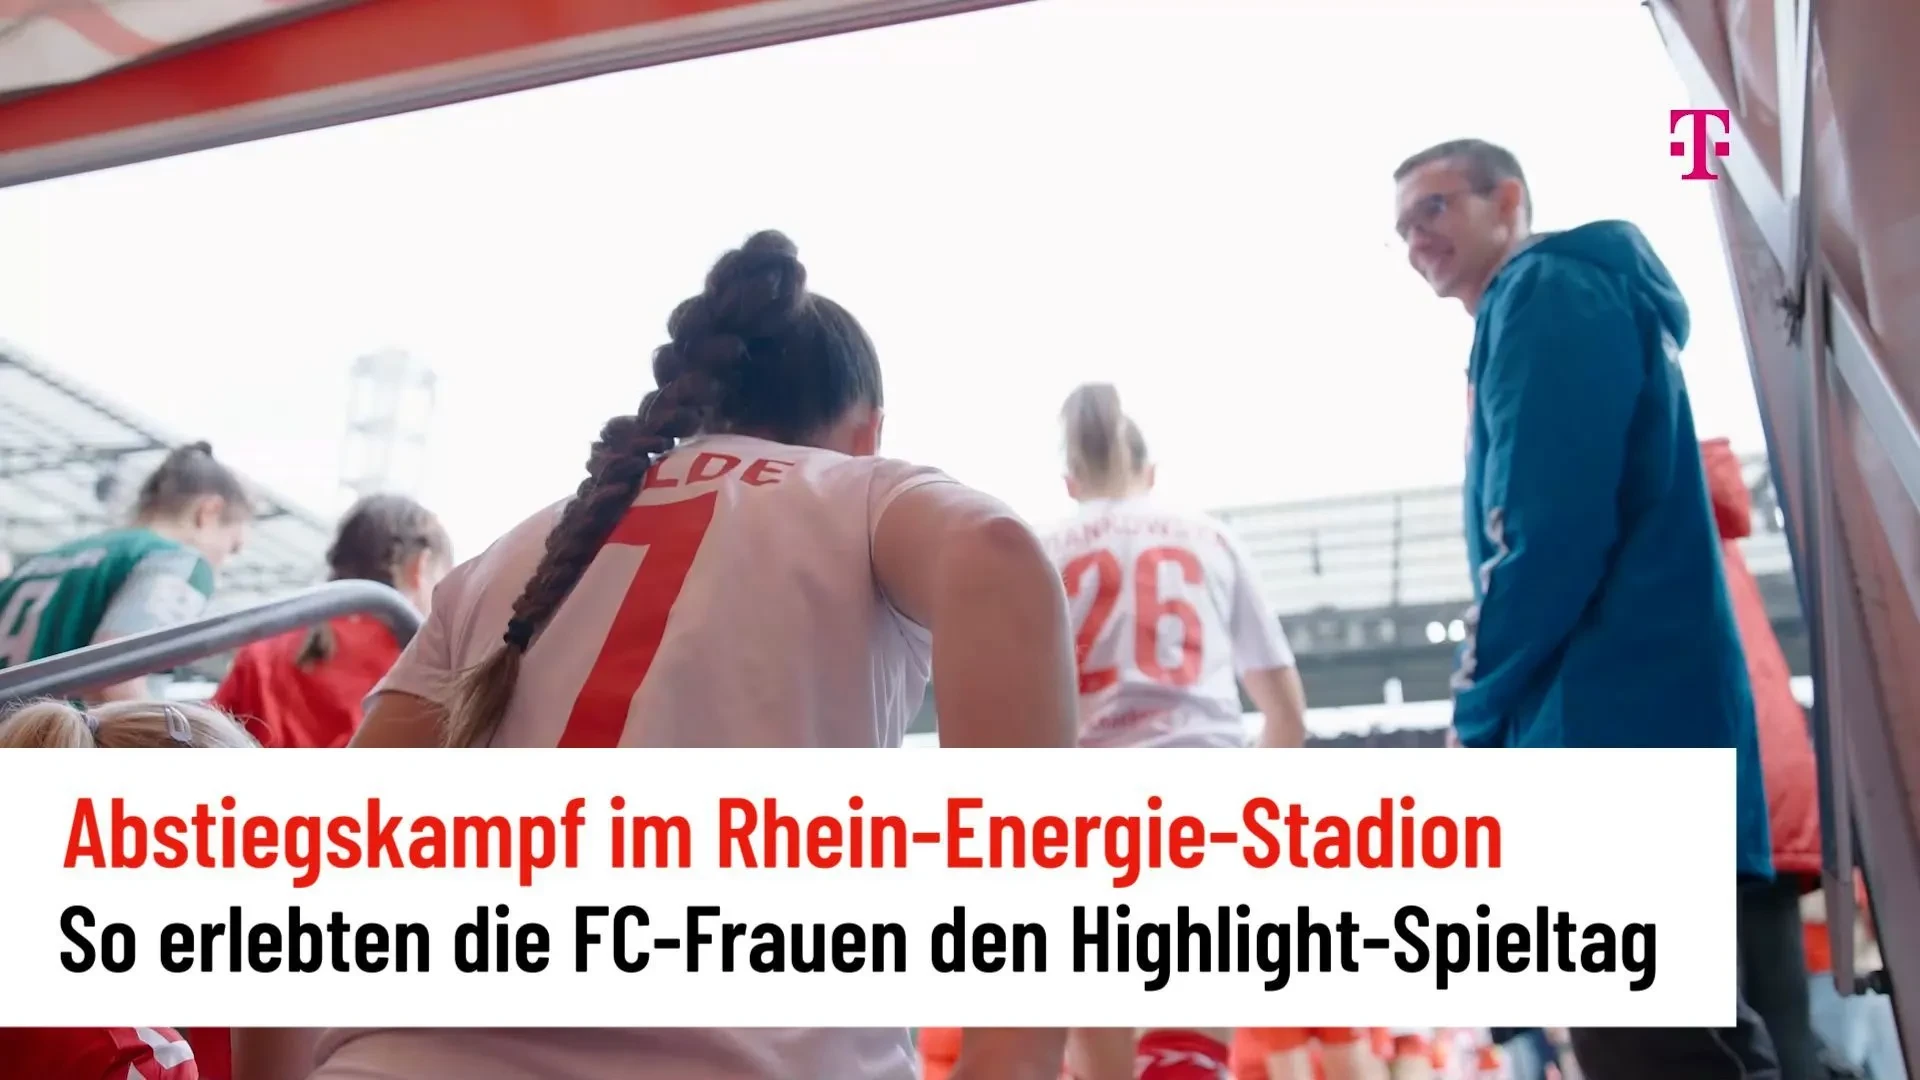 Cómo vivieron las mujeres del FC la jornada en el Rhein-Energie-Stadion